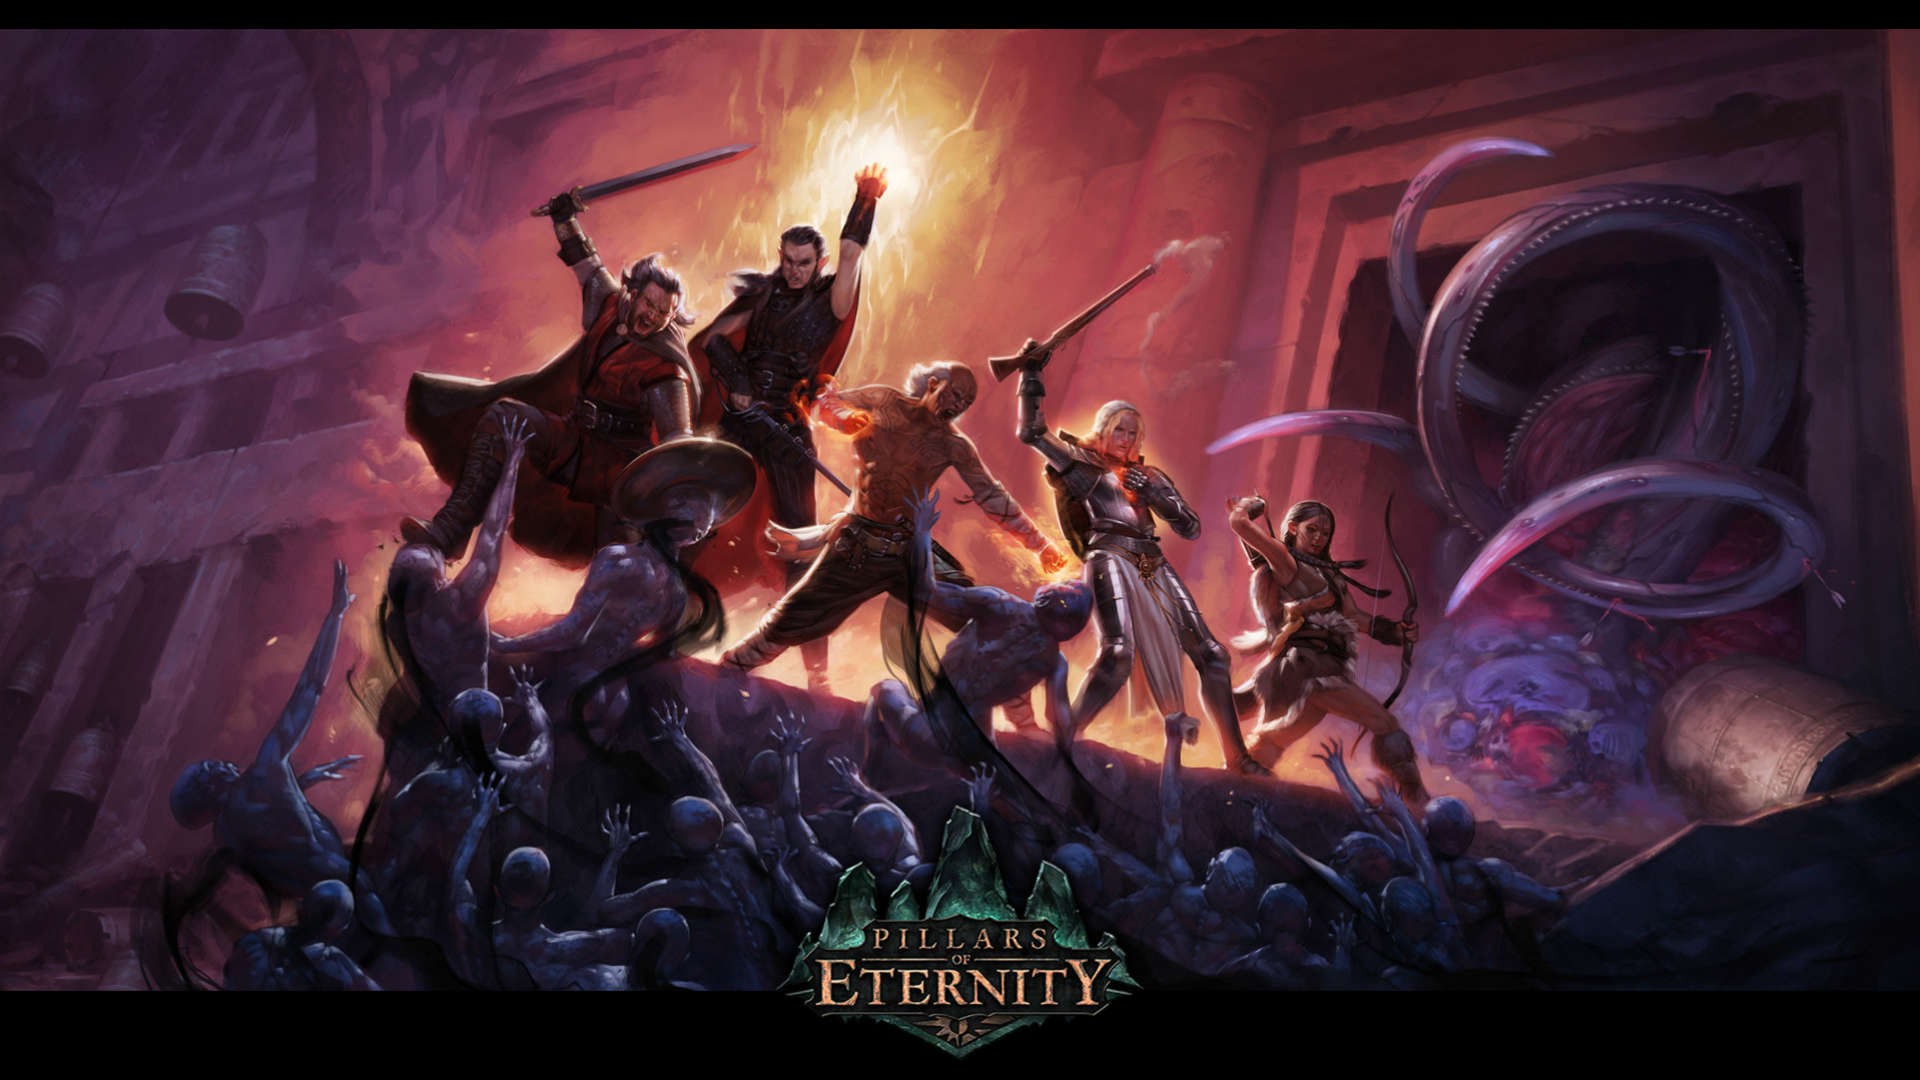 Pillars of Eternity chính thức bán được hơn 500,000 bản